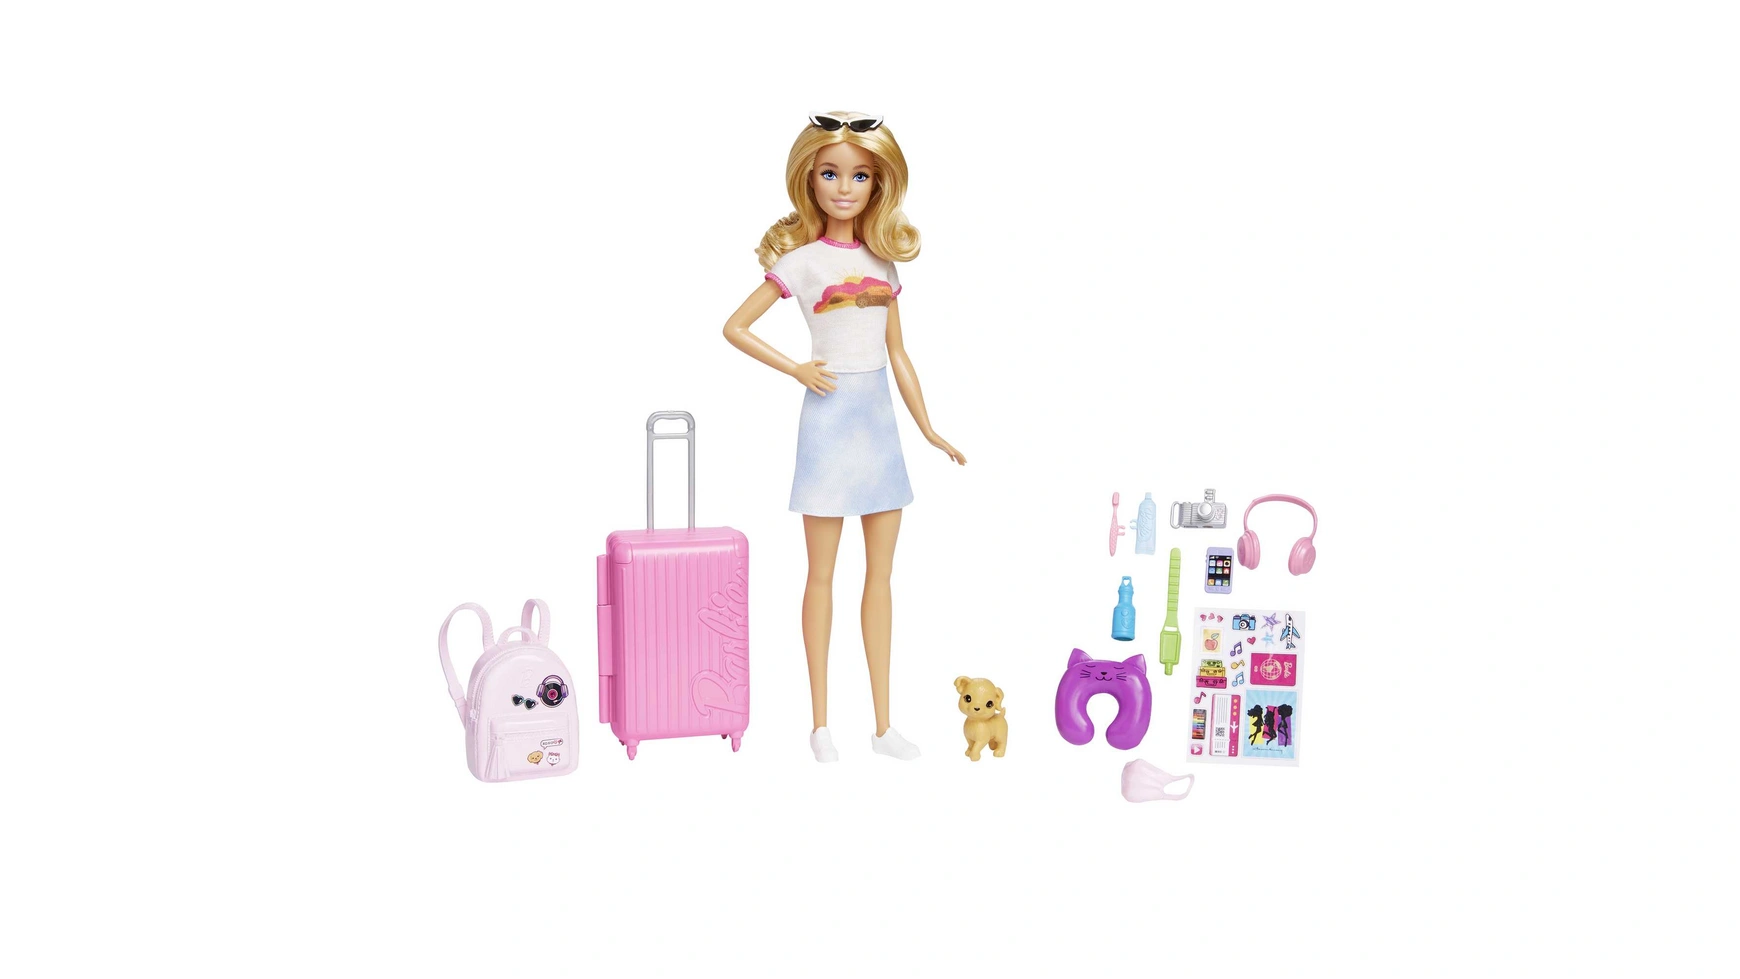 Дорожная кукла Barbie (блондинка), кукла-одевалка с собакой и праздничными аксессуарами набор игровой barbie малибу с аксессуарами gyg39